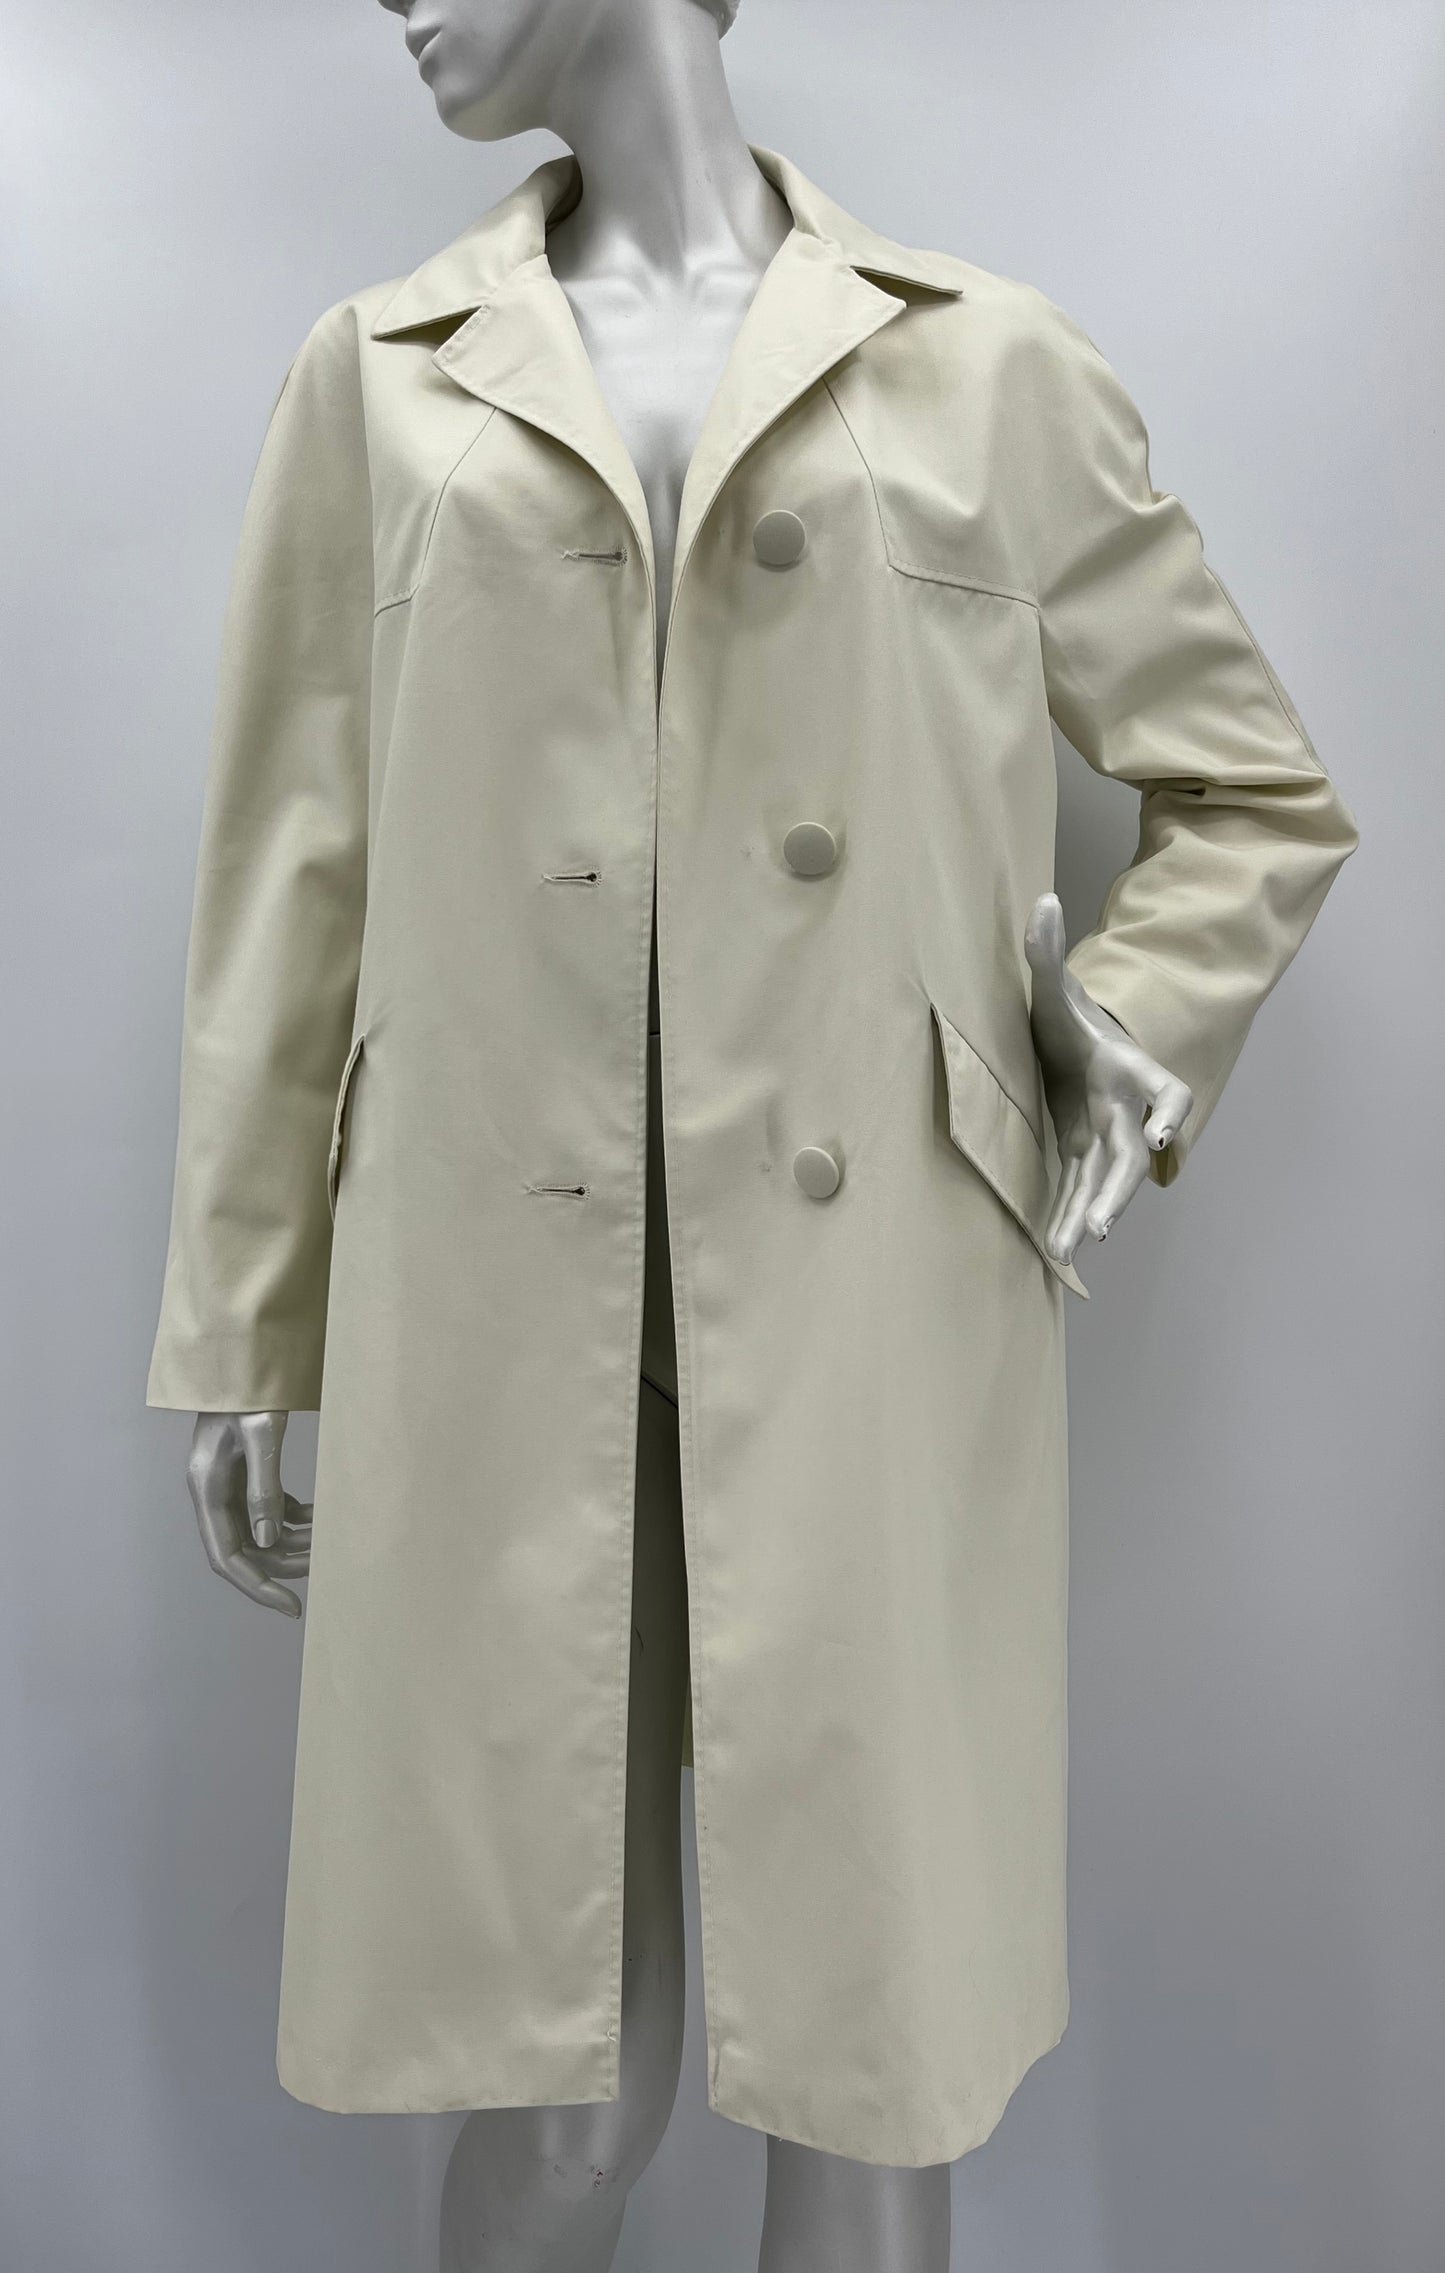 Dixi Coat, luonnonvalkoinen popliinitakki, 60-70-luku, koko 40